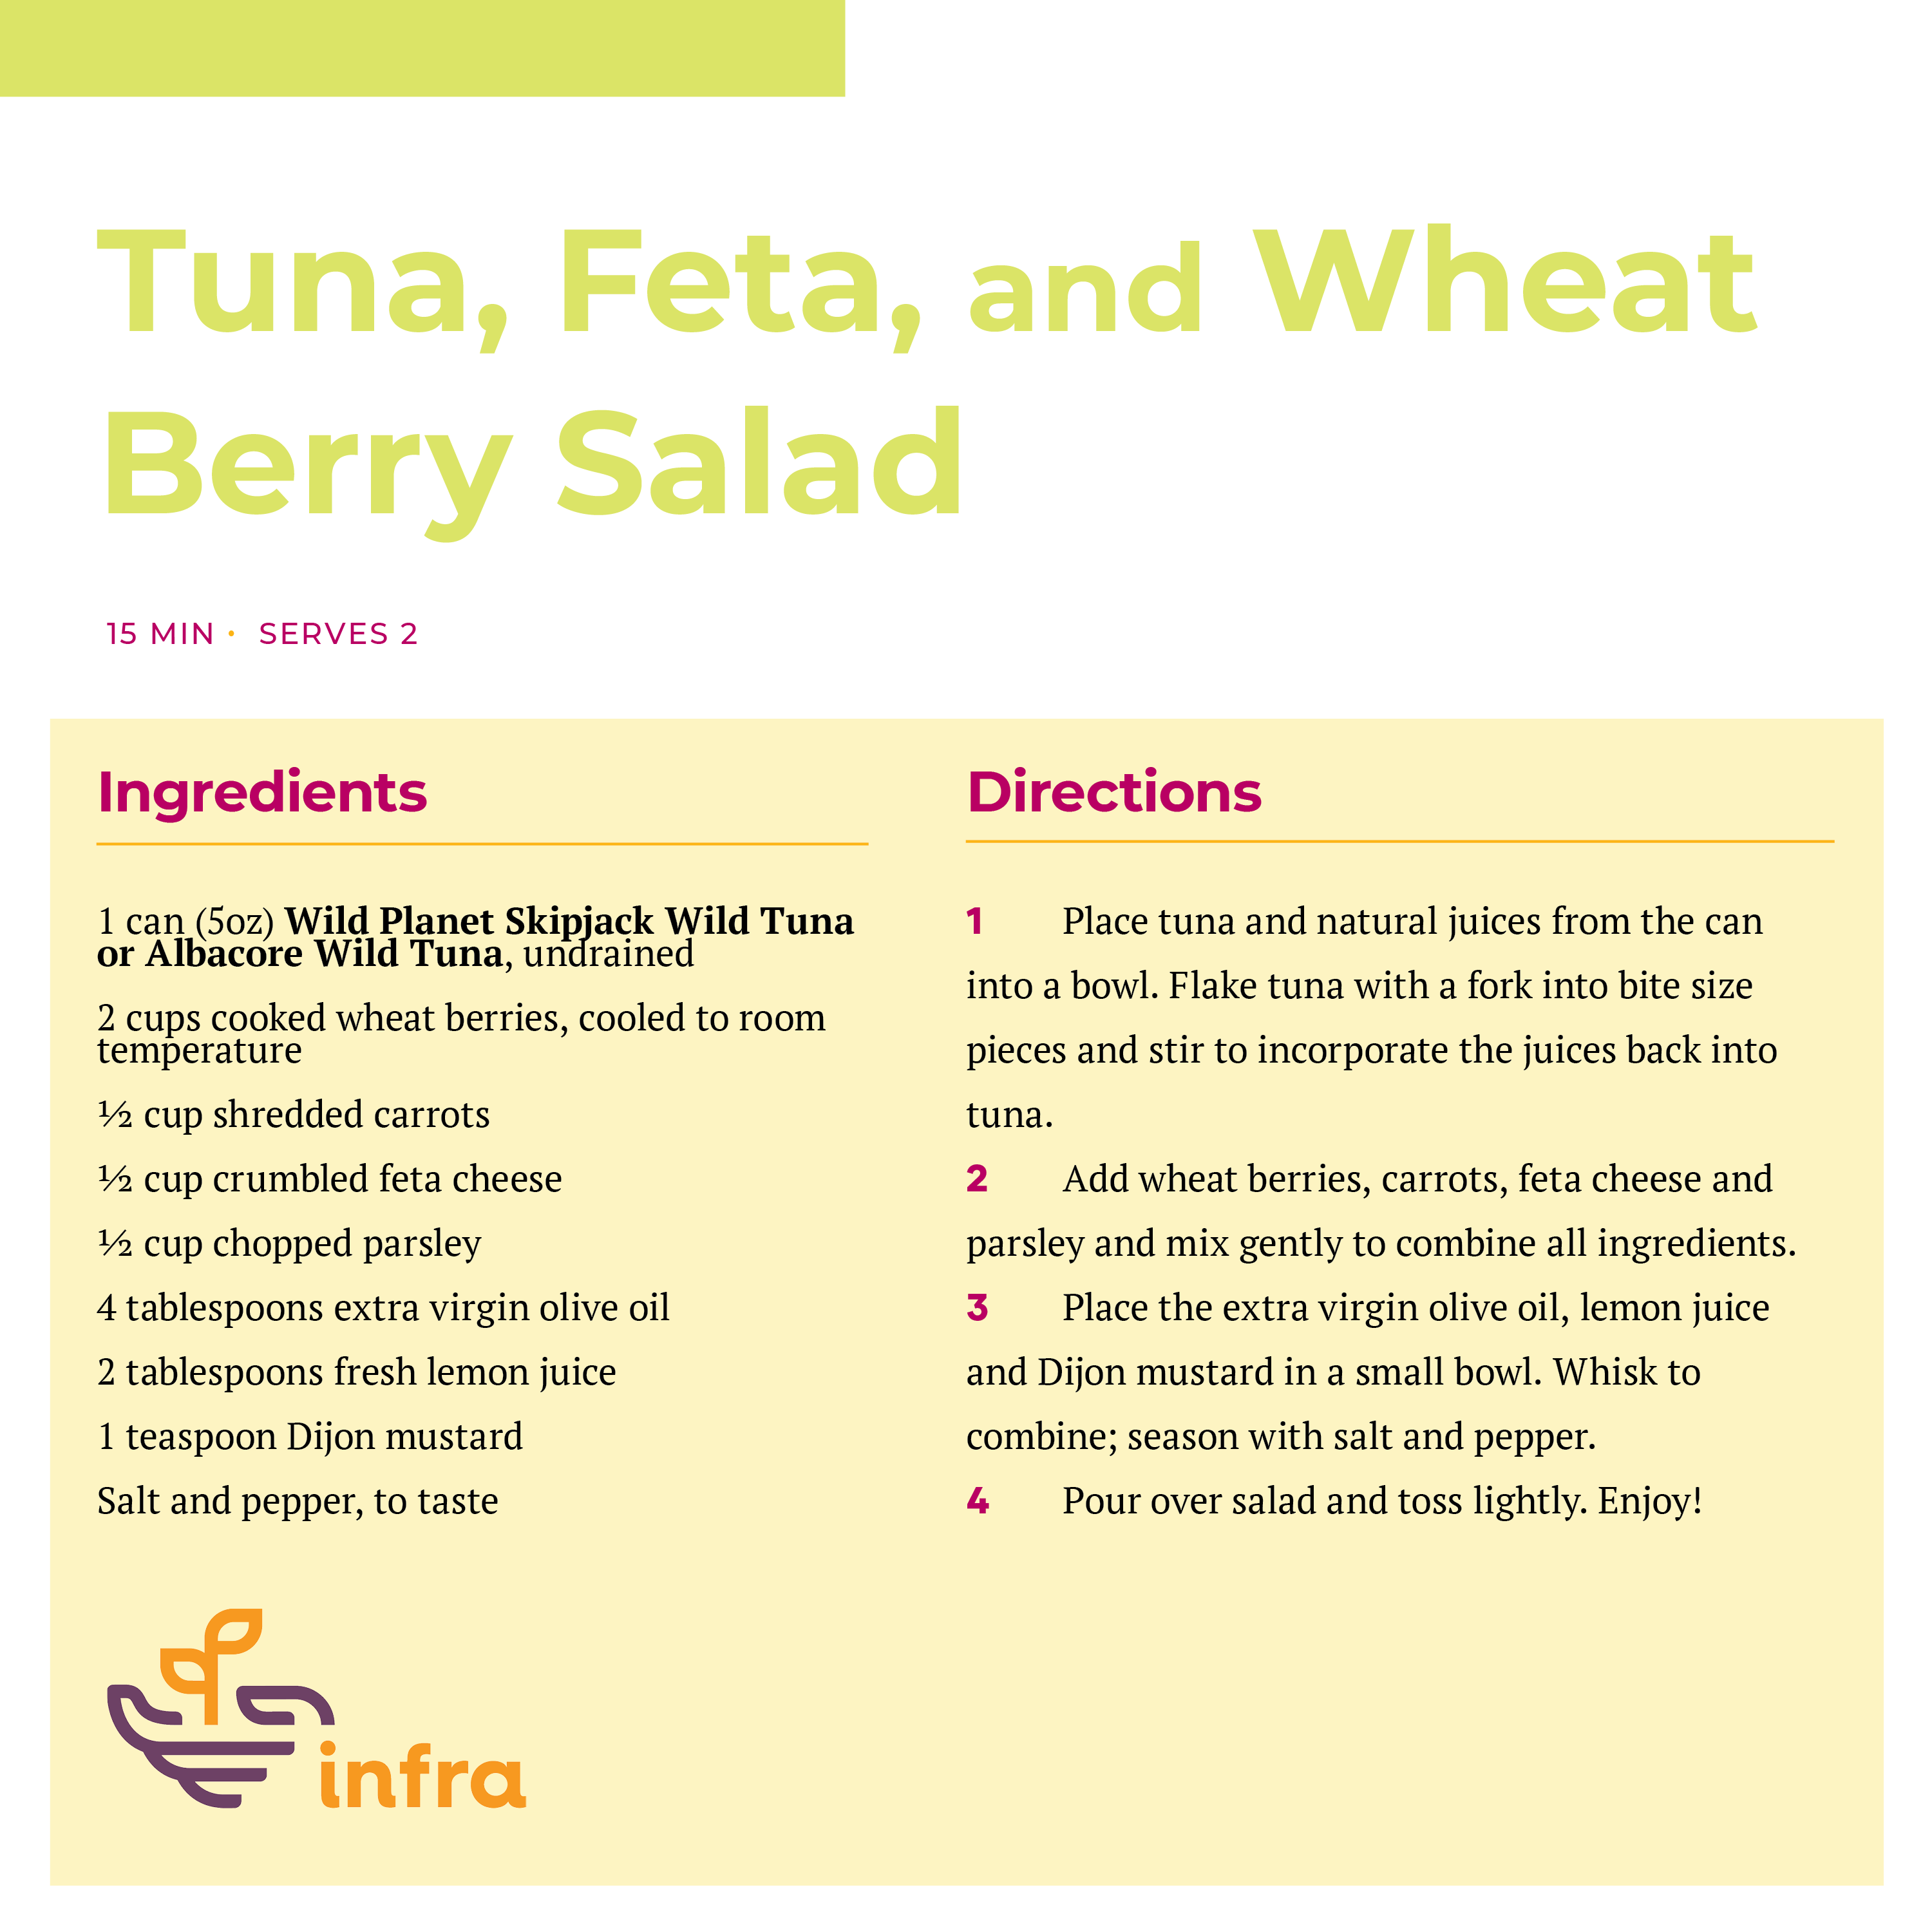  Tuna, Feta, and Wheat Berry Salad Recipe